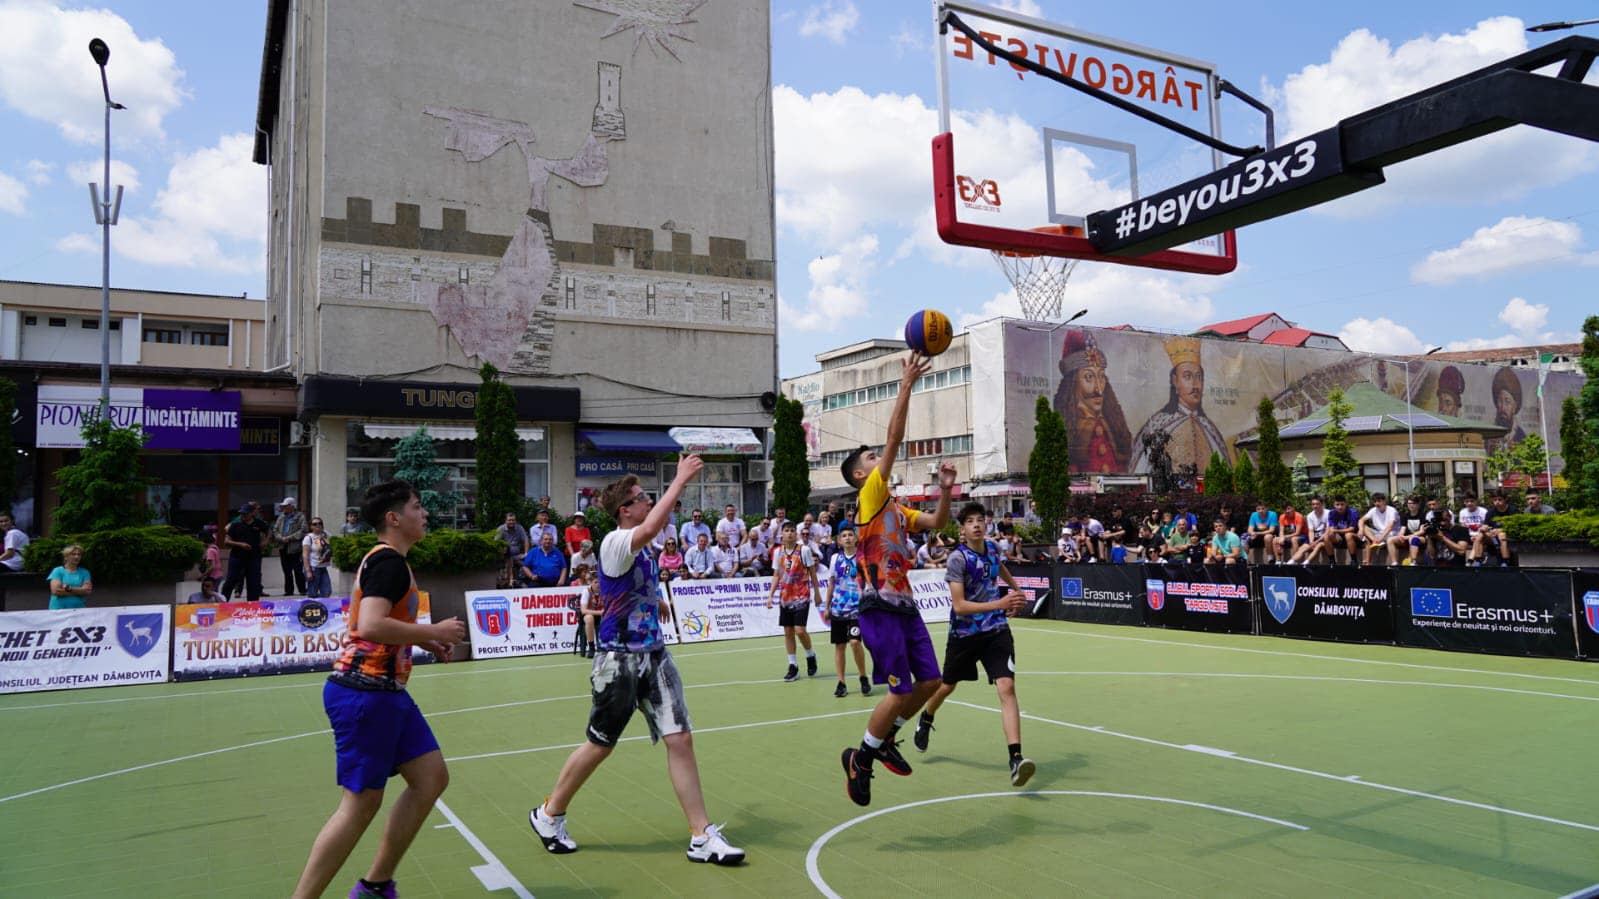 A debutat Turneul de baschet 3×3 „Iubim Dâmbovița”, în Piața Tricolorului din Târgoviște. Evenimentul, organizat de Consiliul Județean Dâmbovița și Clubul Sportiv Școlar Târgoviște, reunește 60 de echipe din 5 categorii de vârstă.